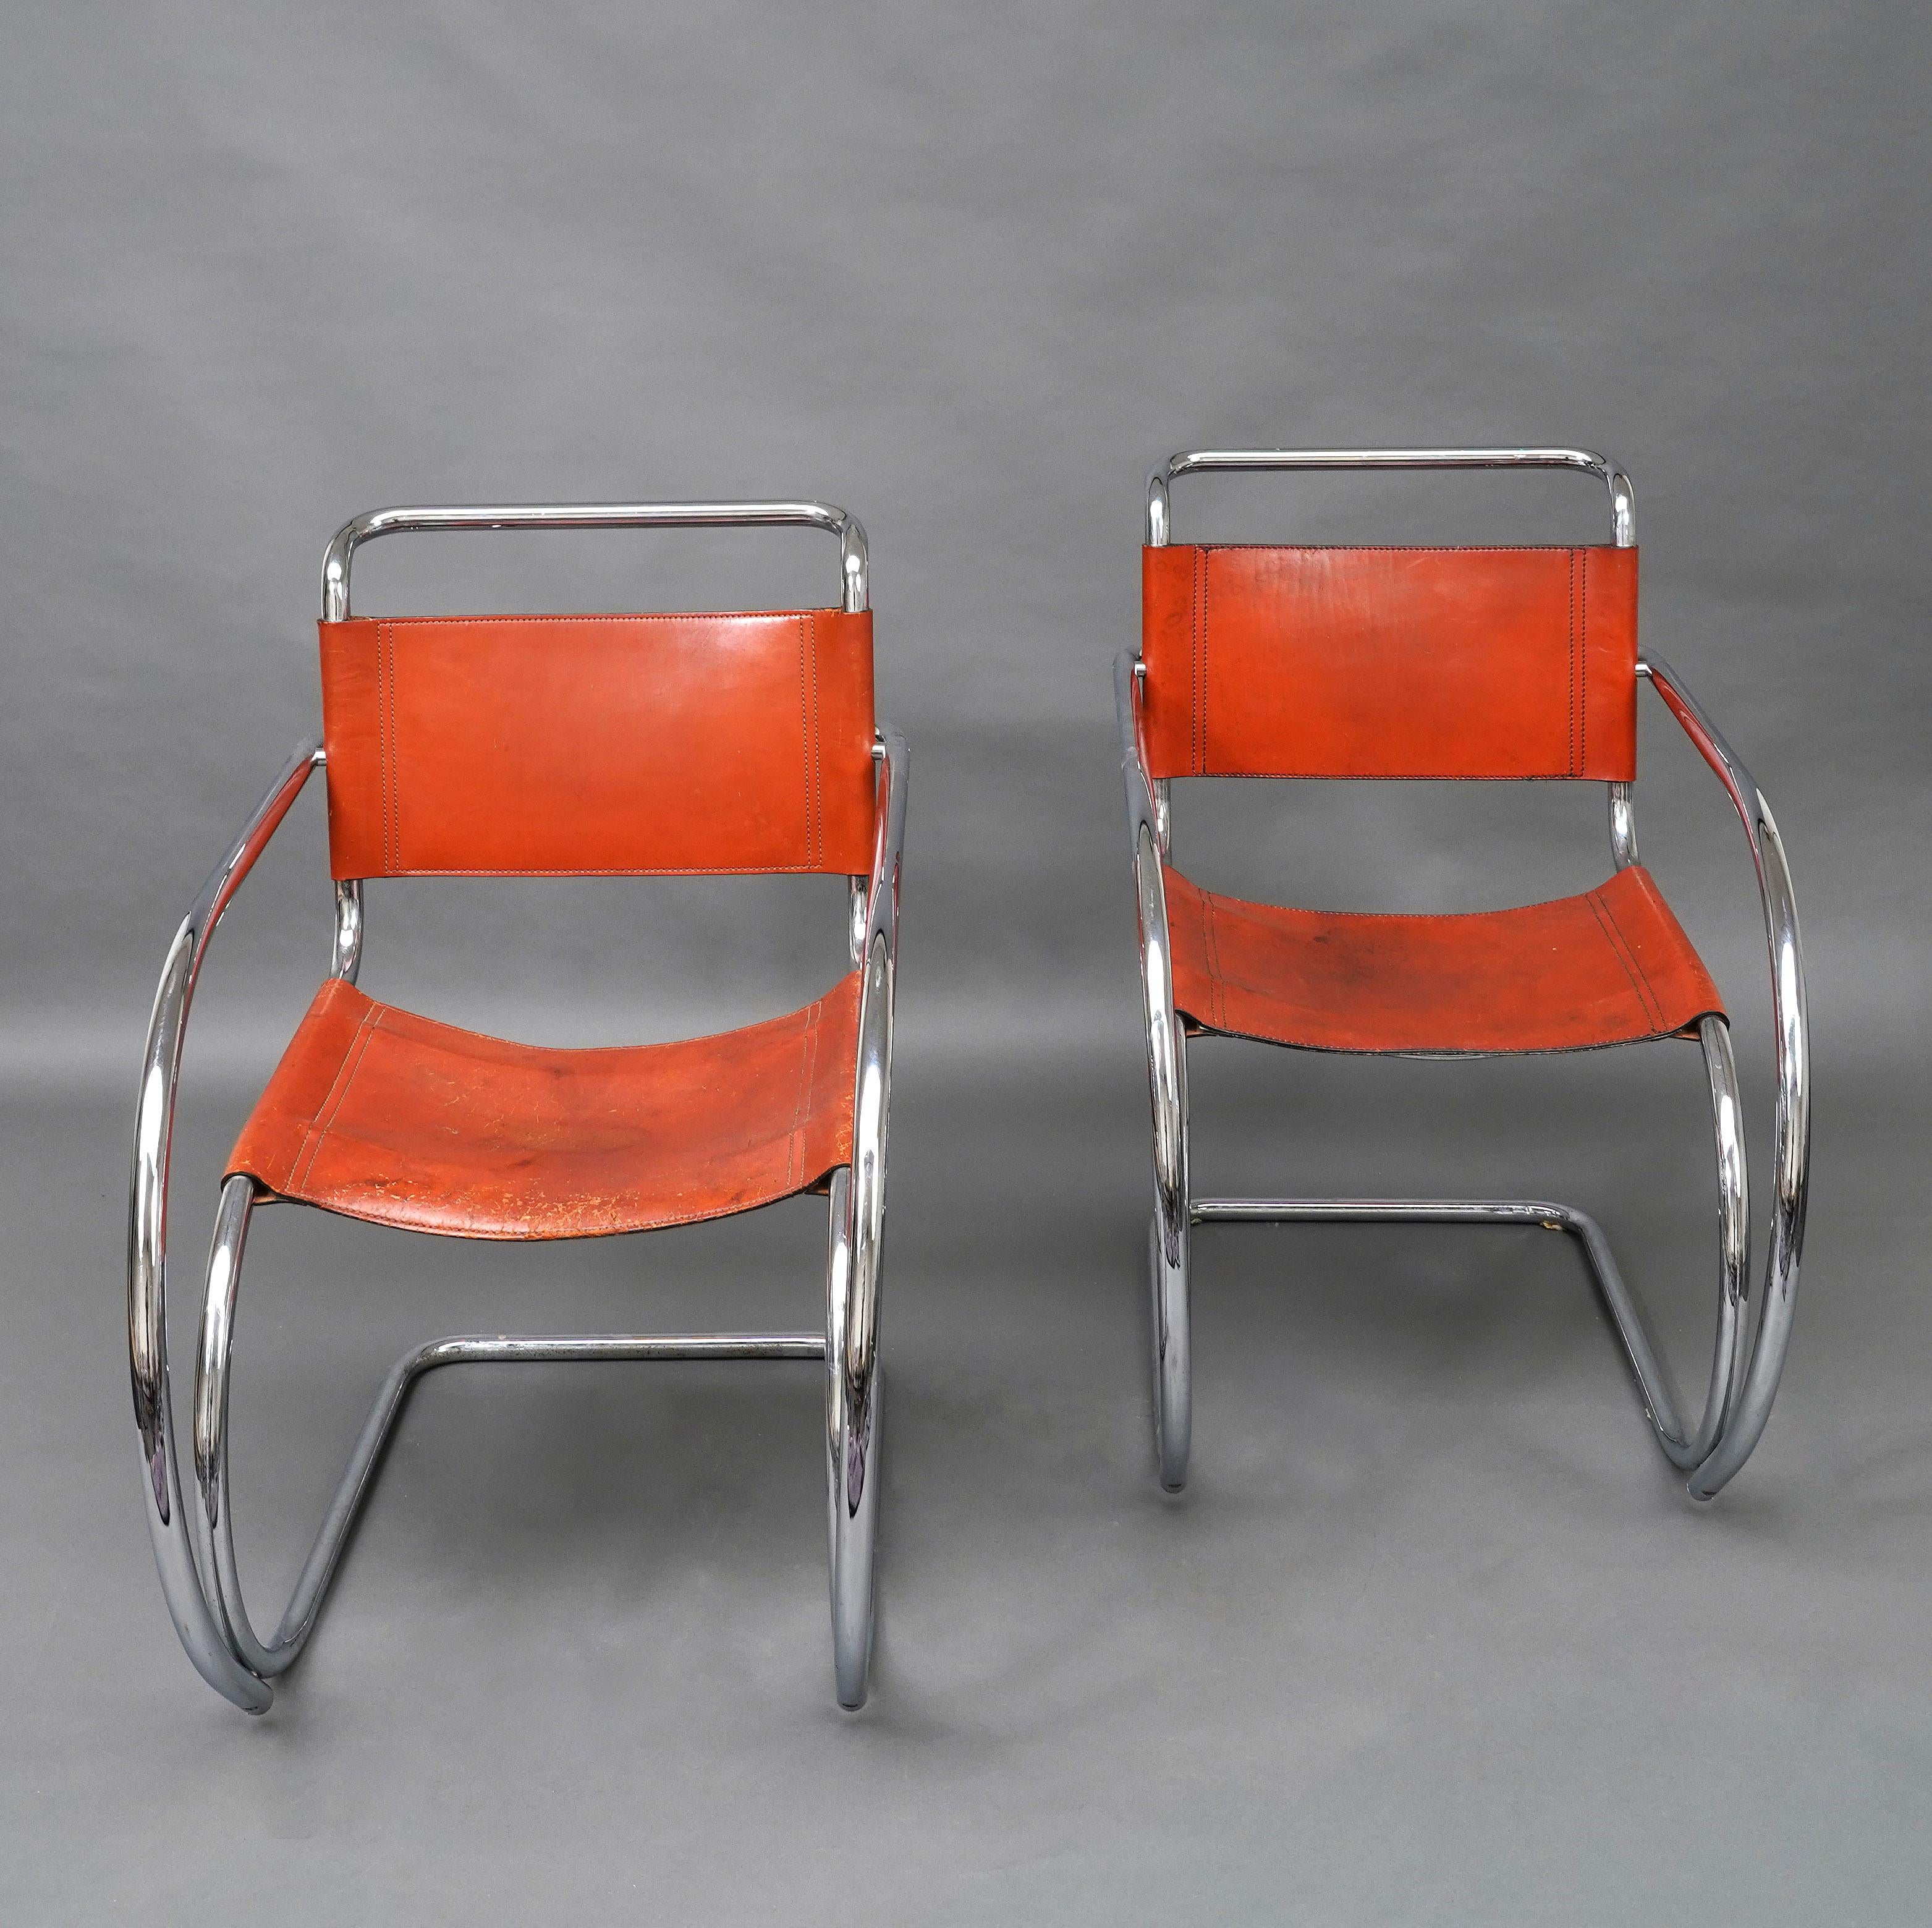 A  Paire de fauteuils Steel-Line en tubes d'acier chromé formant l'assise, les accoudoirs et les pieds en une seule pièce, avec cuir rouge patiné. 

Le fauteuil MR20 fait partie des premiers meubles en acier conçus par Mies van der Rohe. Le choix du